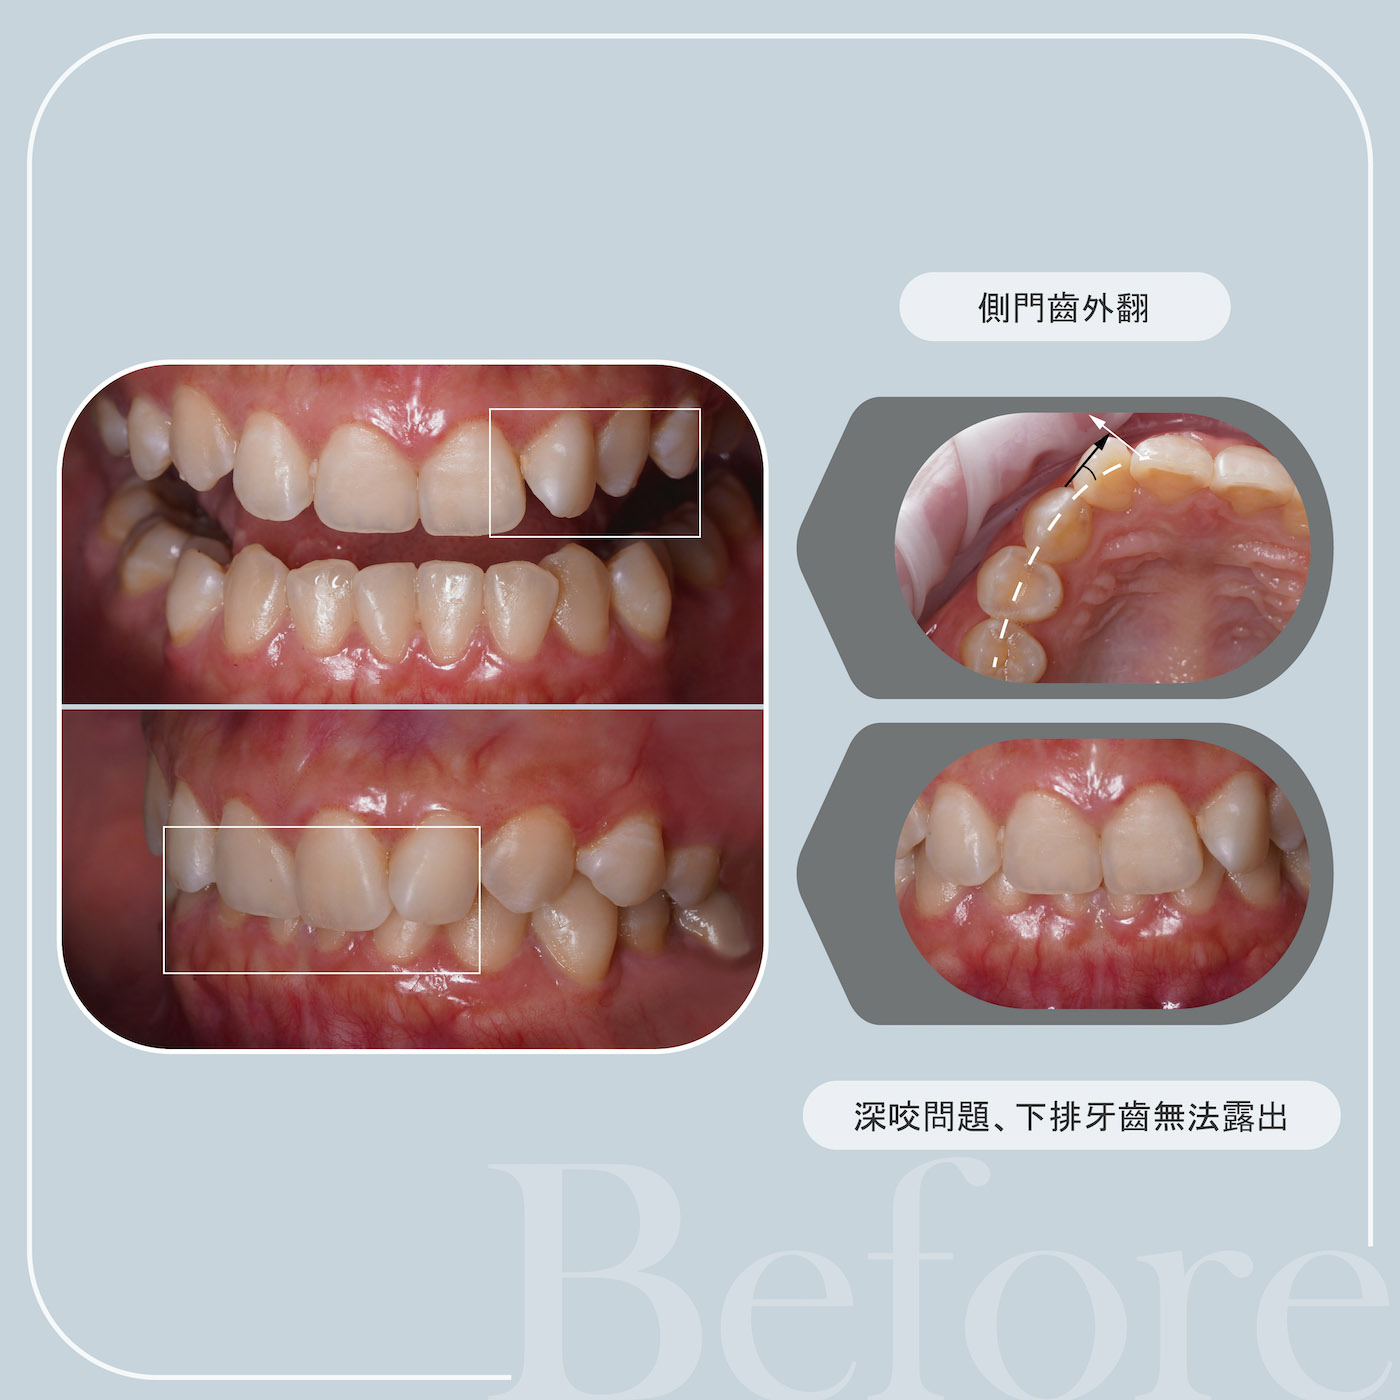 患者治療前的牙齒外觀：上排側門牙外翻，深咬也蓋住下排牙齒